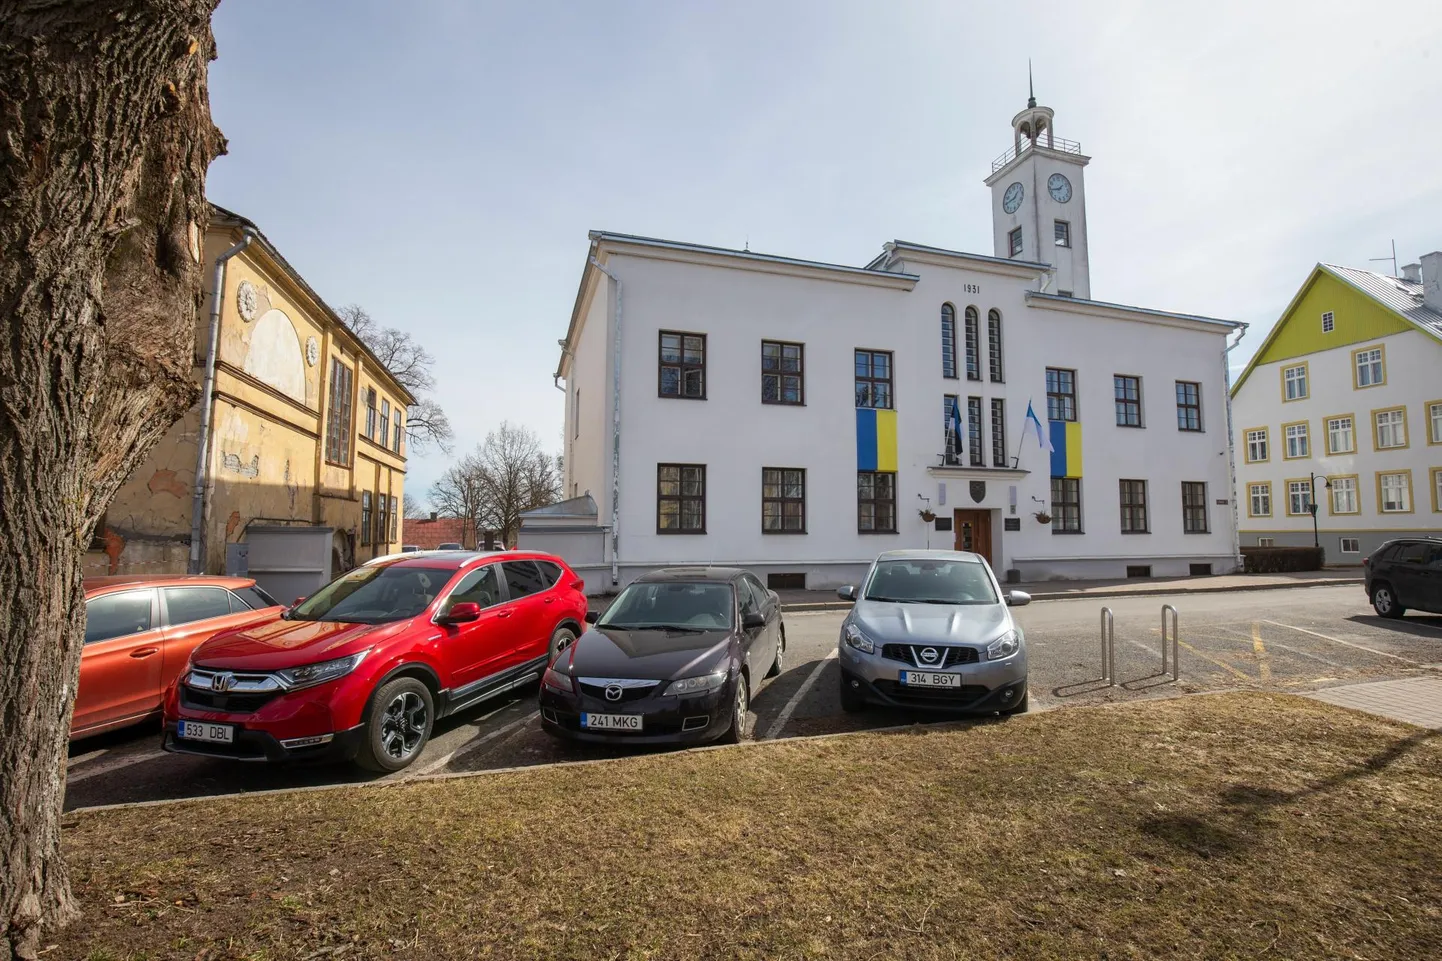 Päästeamet tegi linnavalitsusele ettekirjutuse 2019. aasta veebruaris. Viljandi linnavalitsus nõutud ajaks ettekirjutust ei täitnud ja saigi nüüd päästeametilt 2000-eurose arve. 